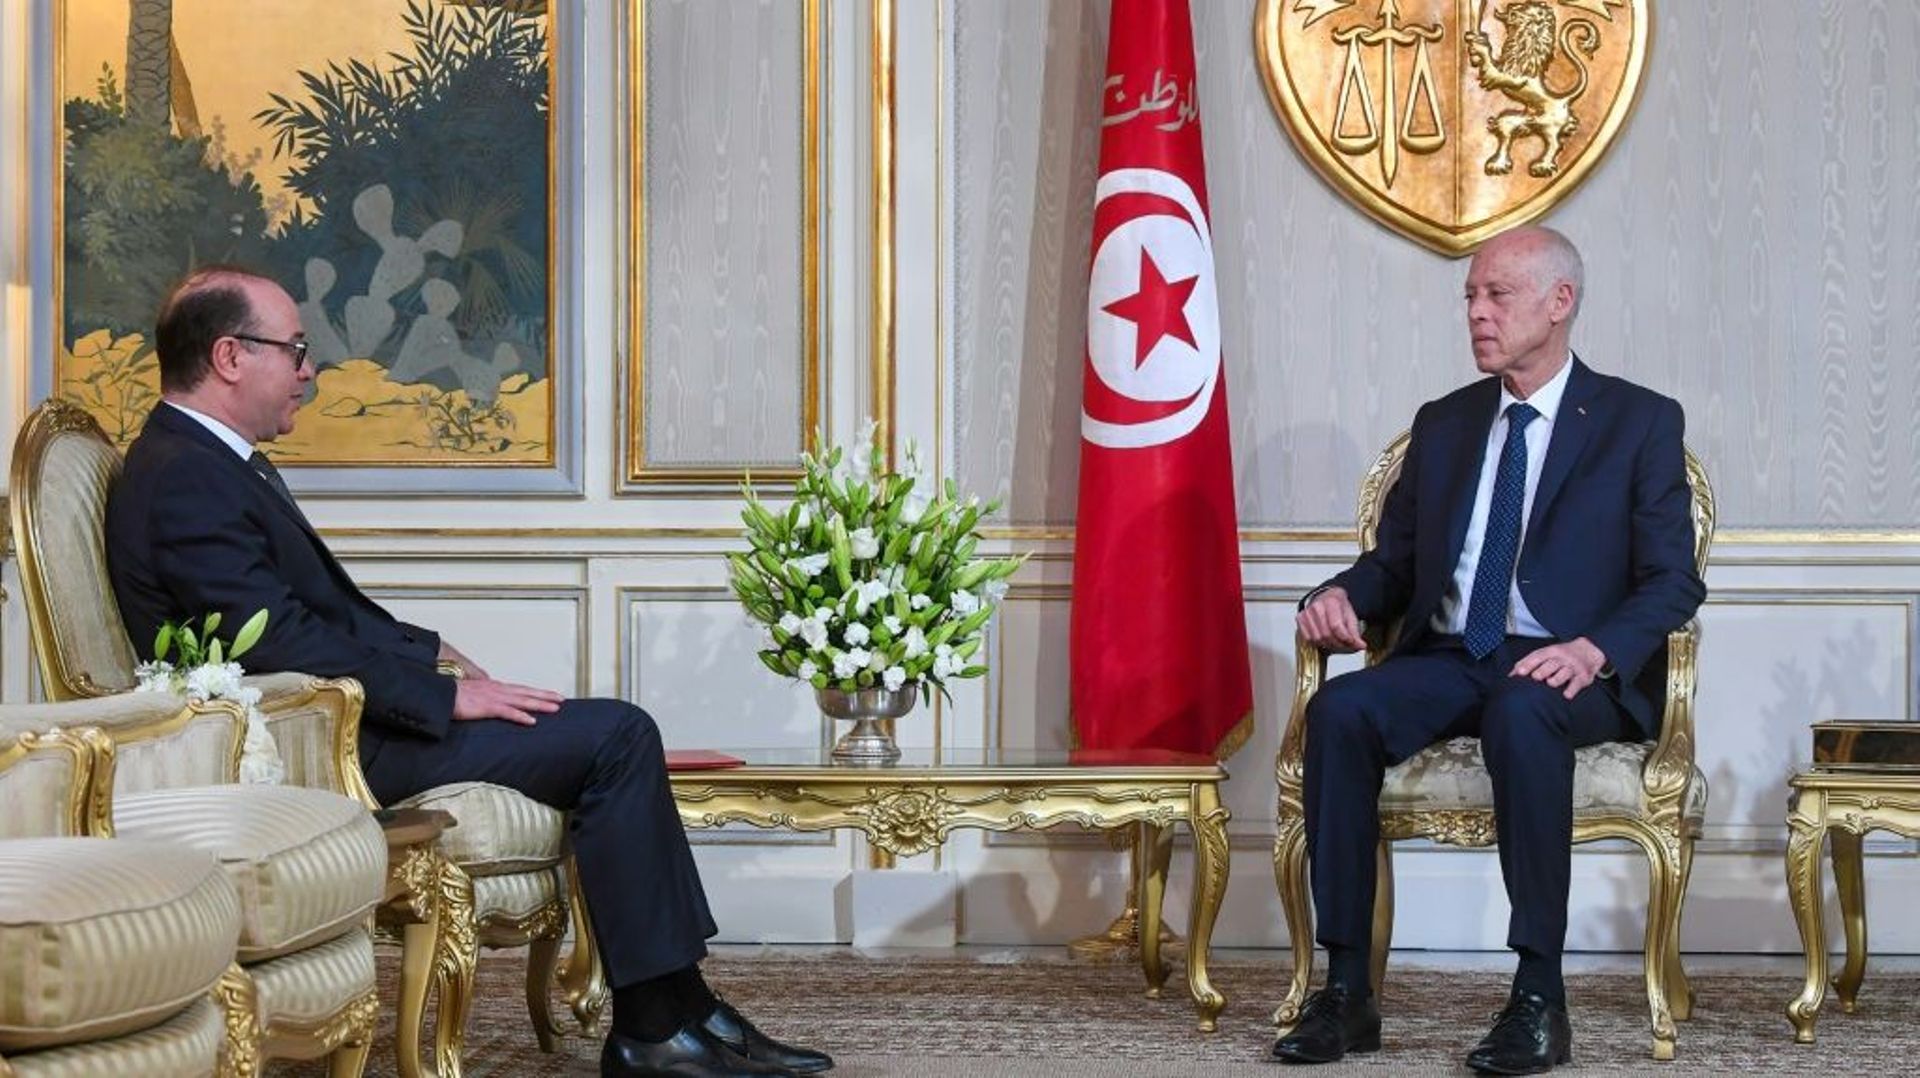 Le président tunisien Kais Saied rencontre le Premier ministre tunisien désigné Elyes Fakhfakh, chargé de former un gouvernement, au palais présidentiel de Carthage, à l'est de Tunis le 20 janvier 2020